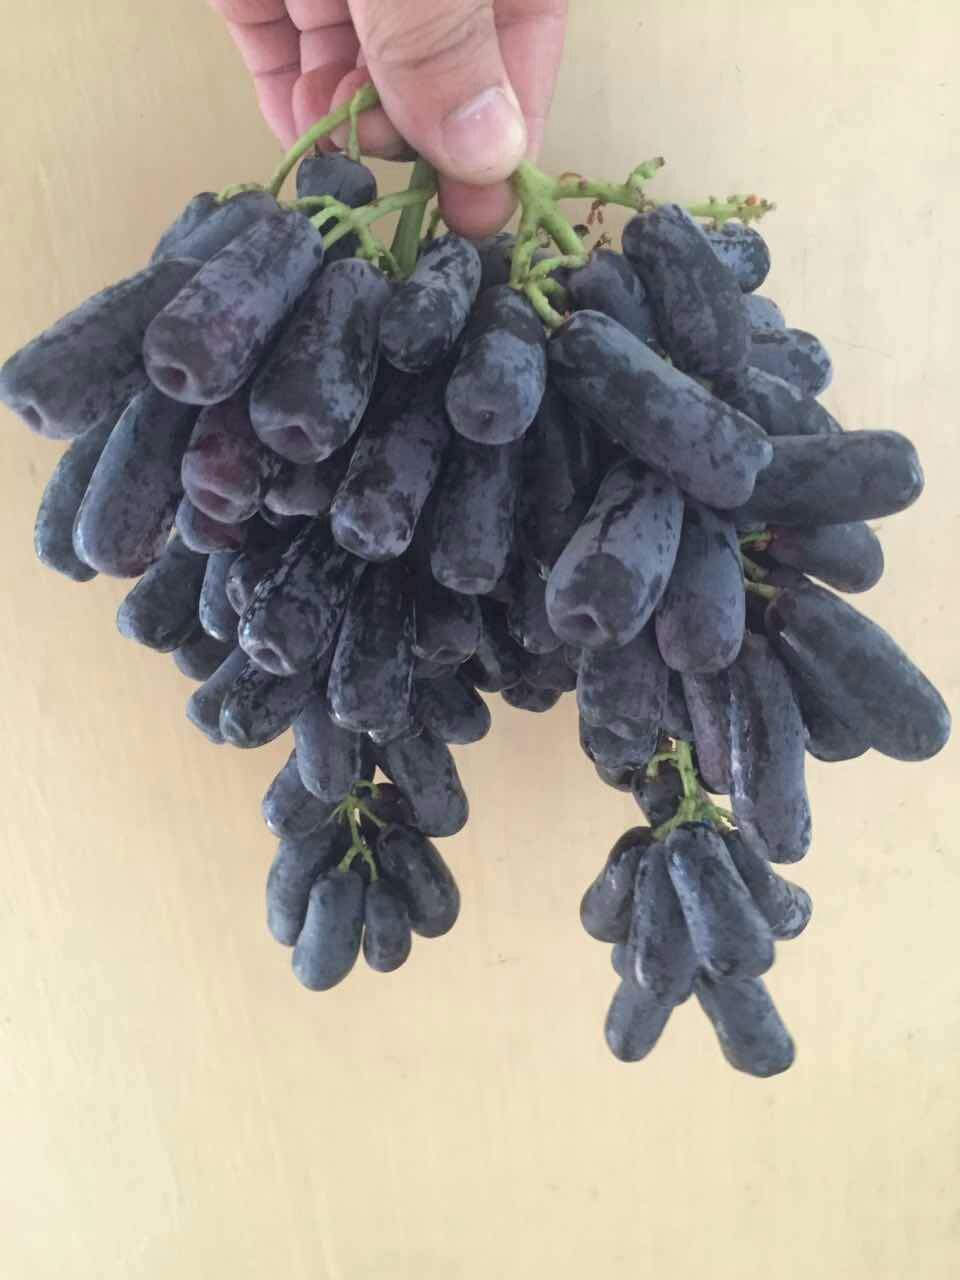 无籽葡萄是转基因生产吗?有没有危害?